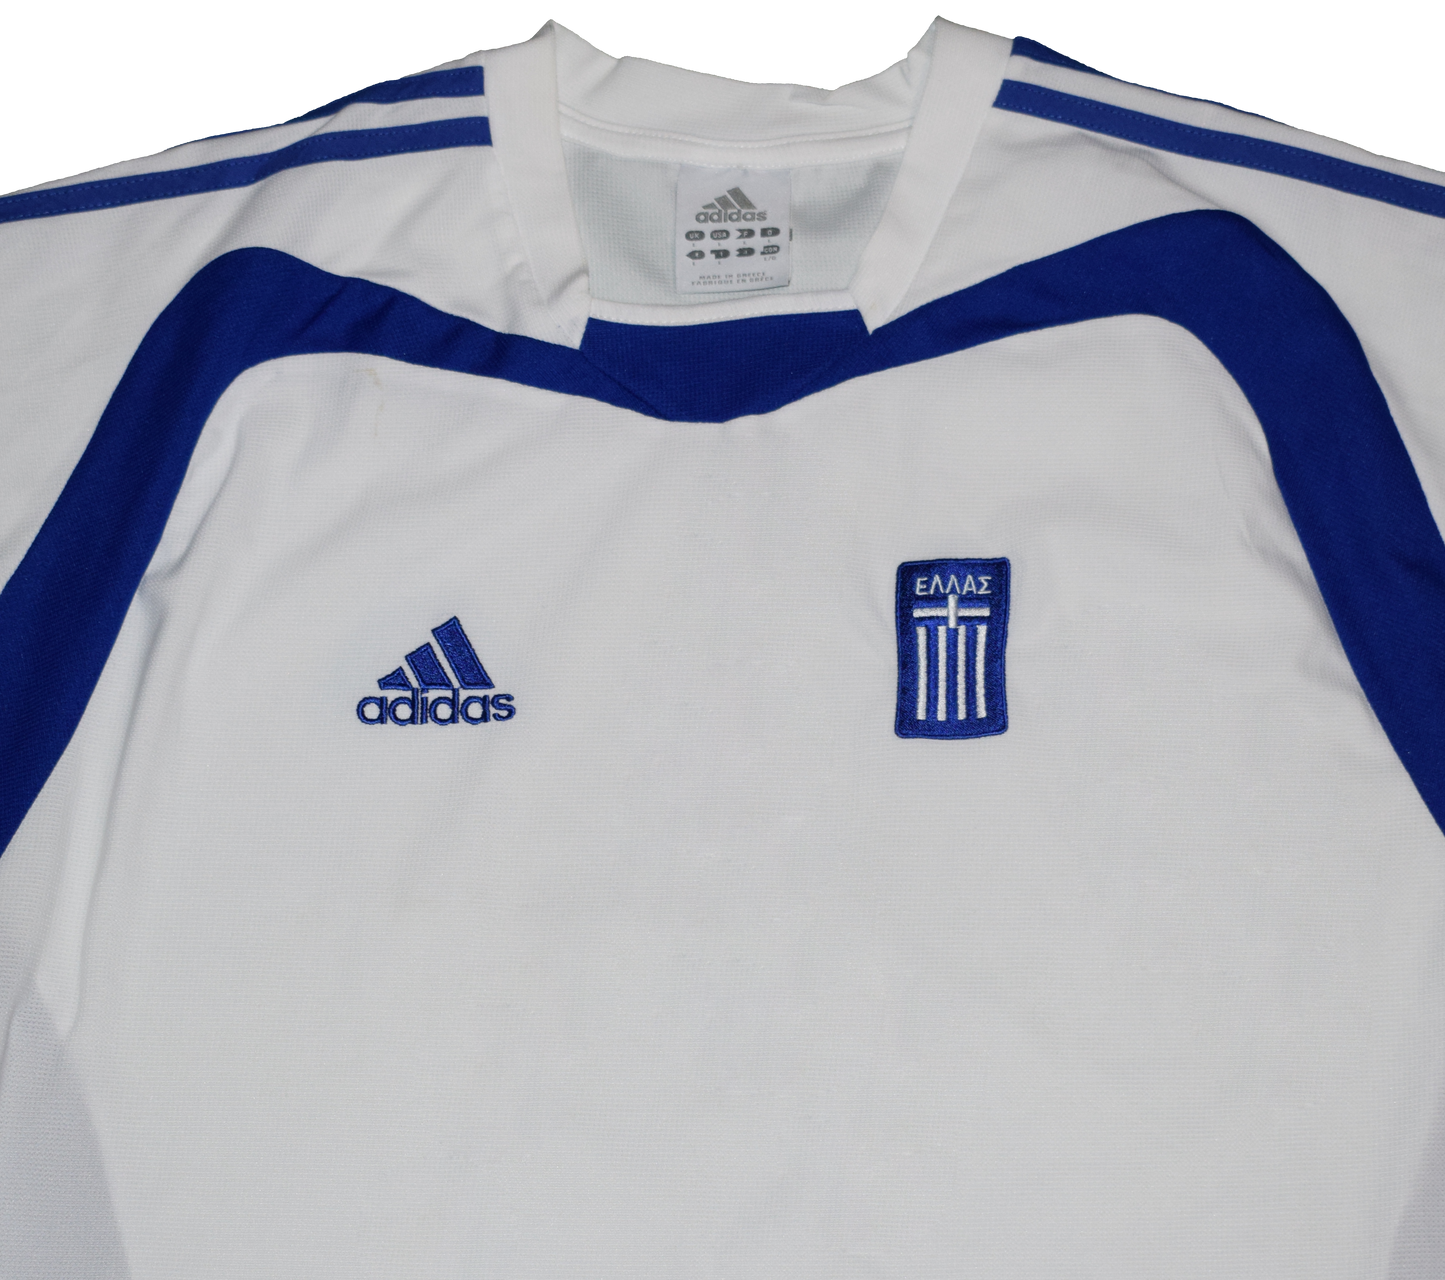 Greece 2004 EURO Away kit Large